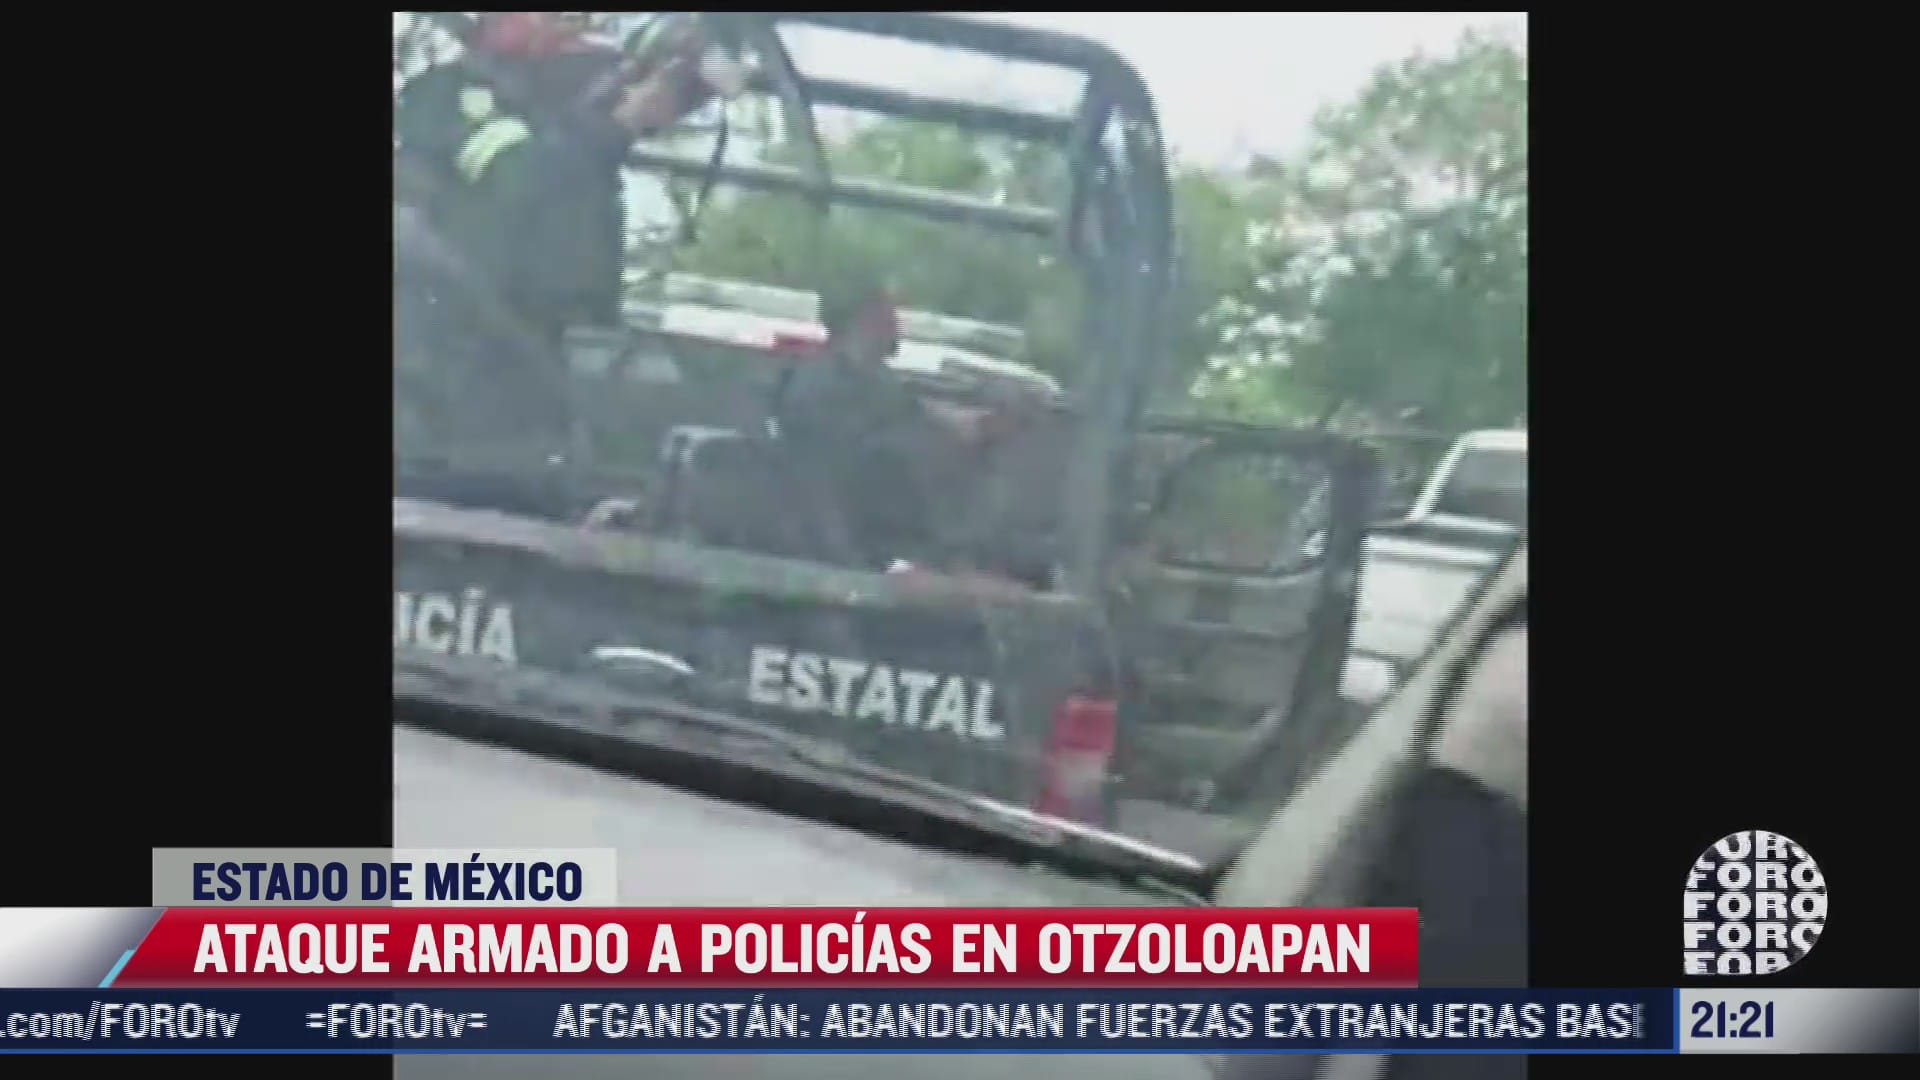 asi ocurrio el ataque armado a policias en otzoloapan estado de mexico